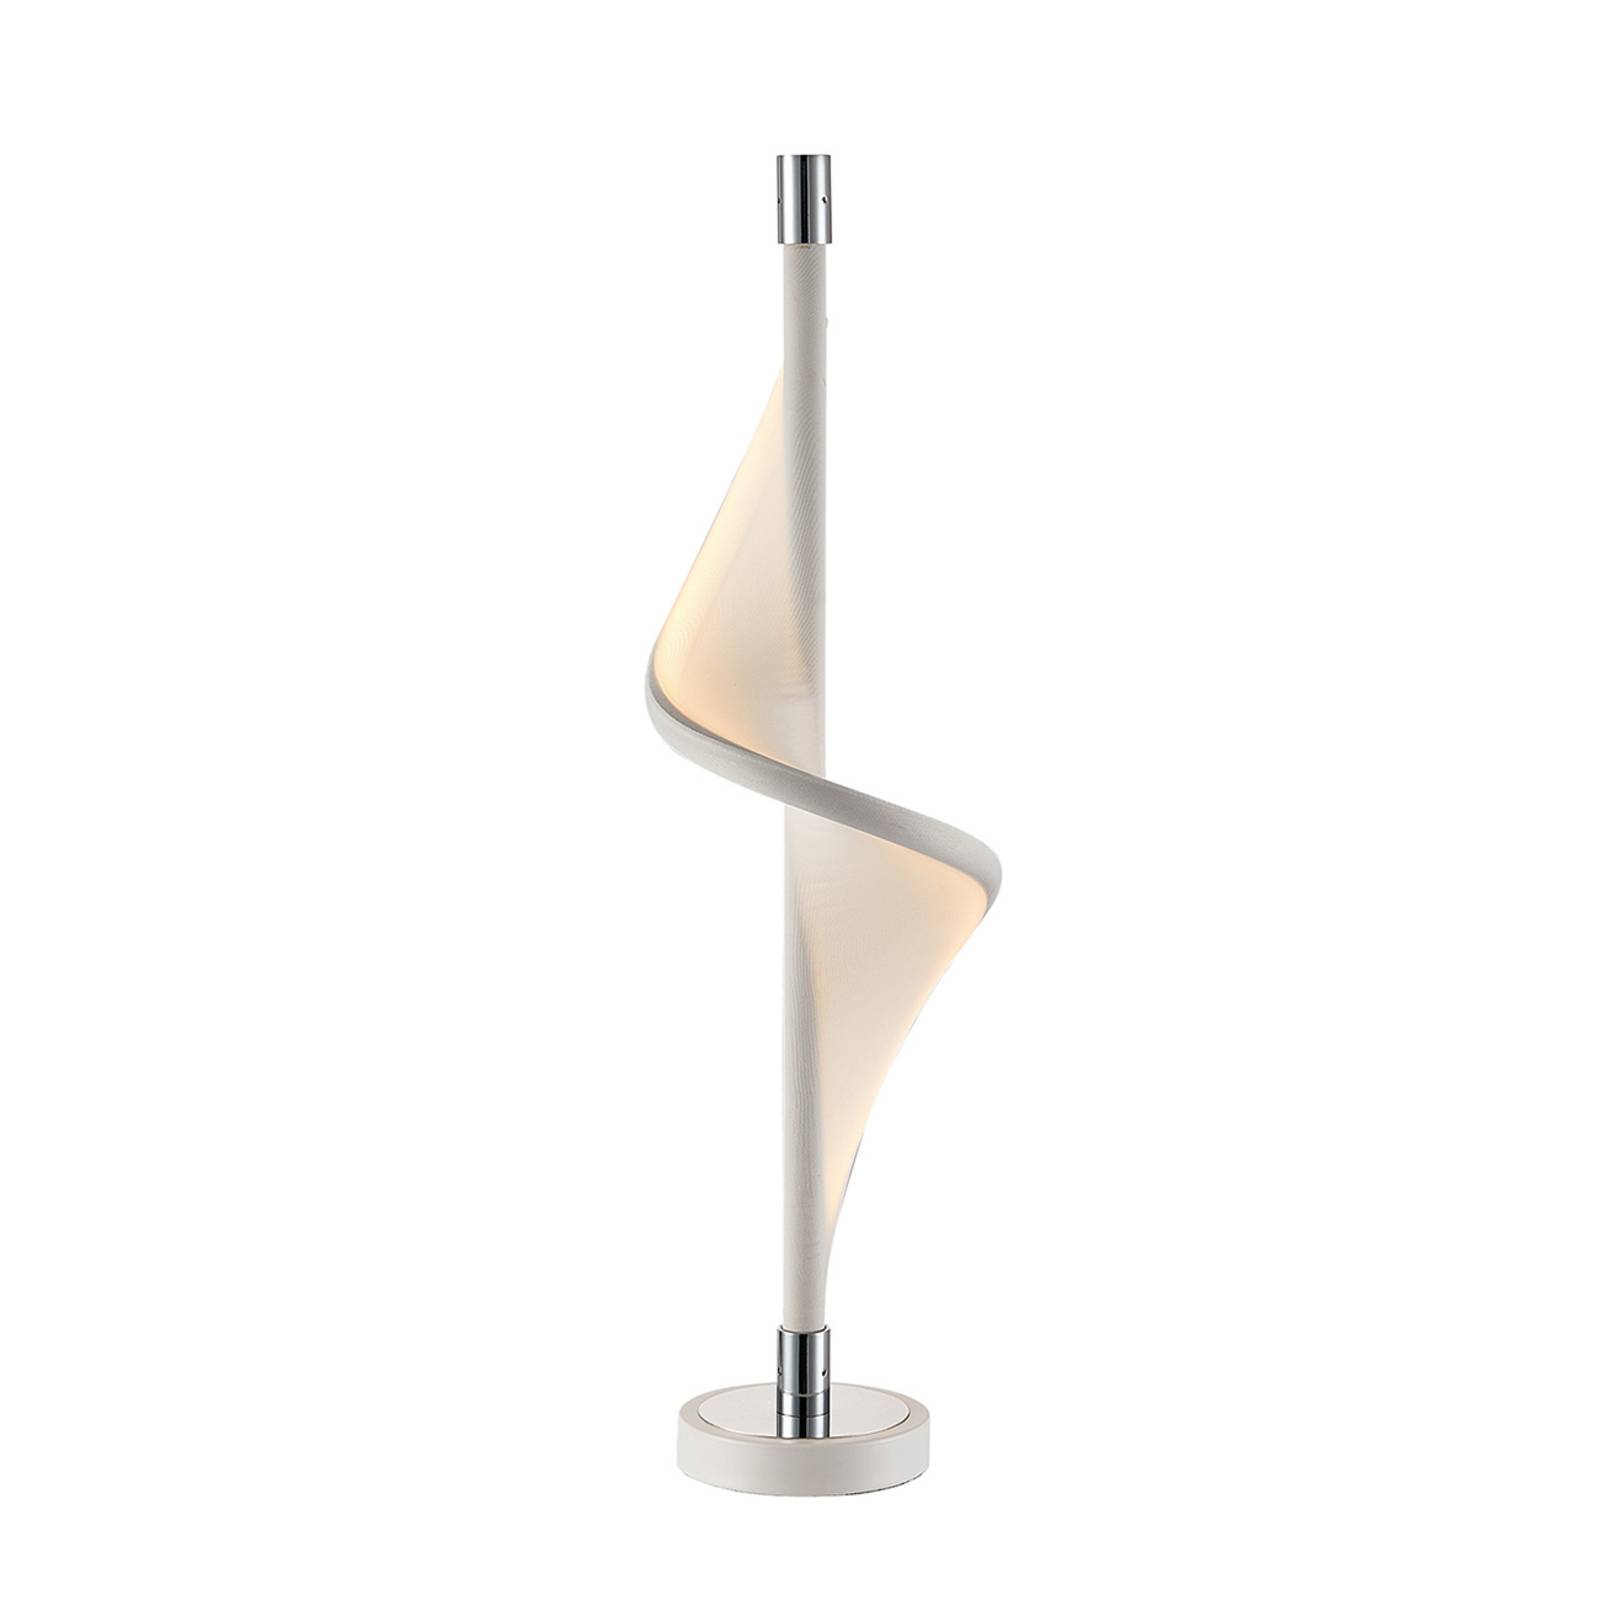 Lucande Edano LED-Tischlampe in gedrehter Form